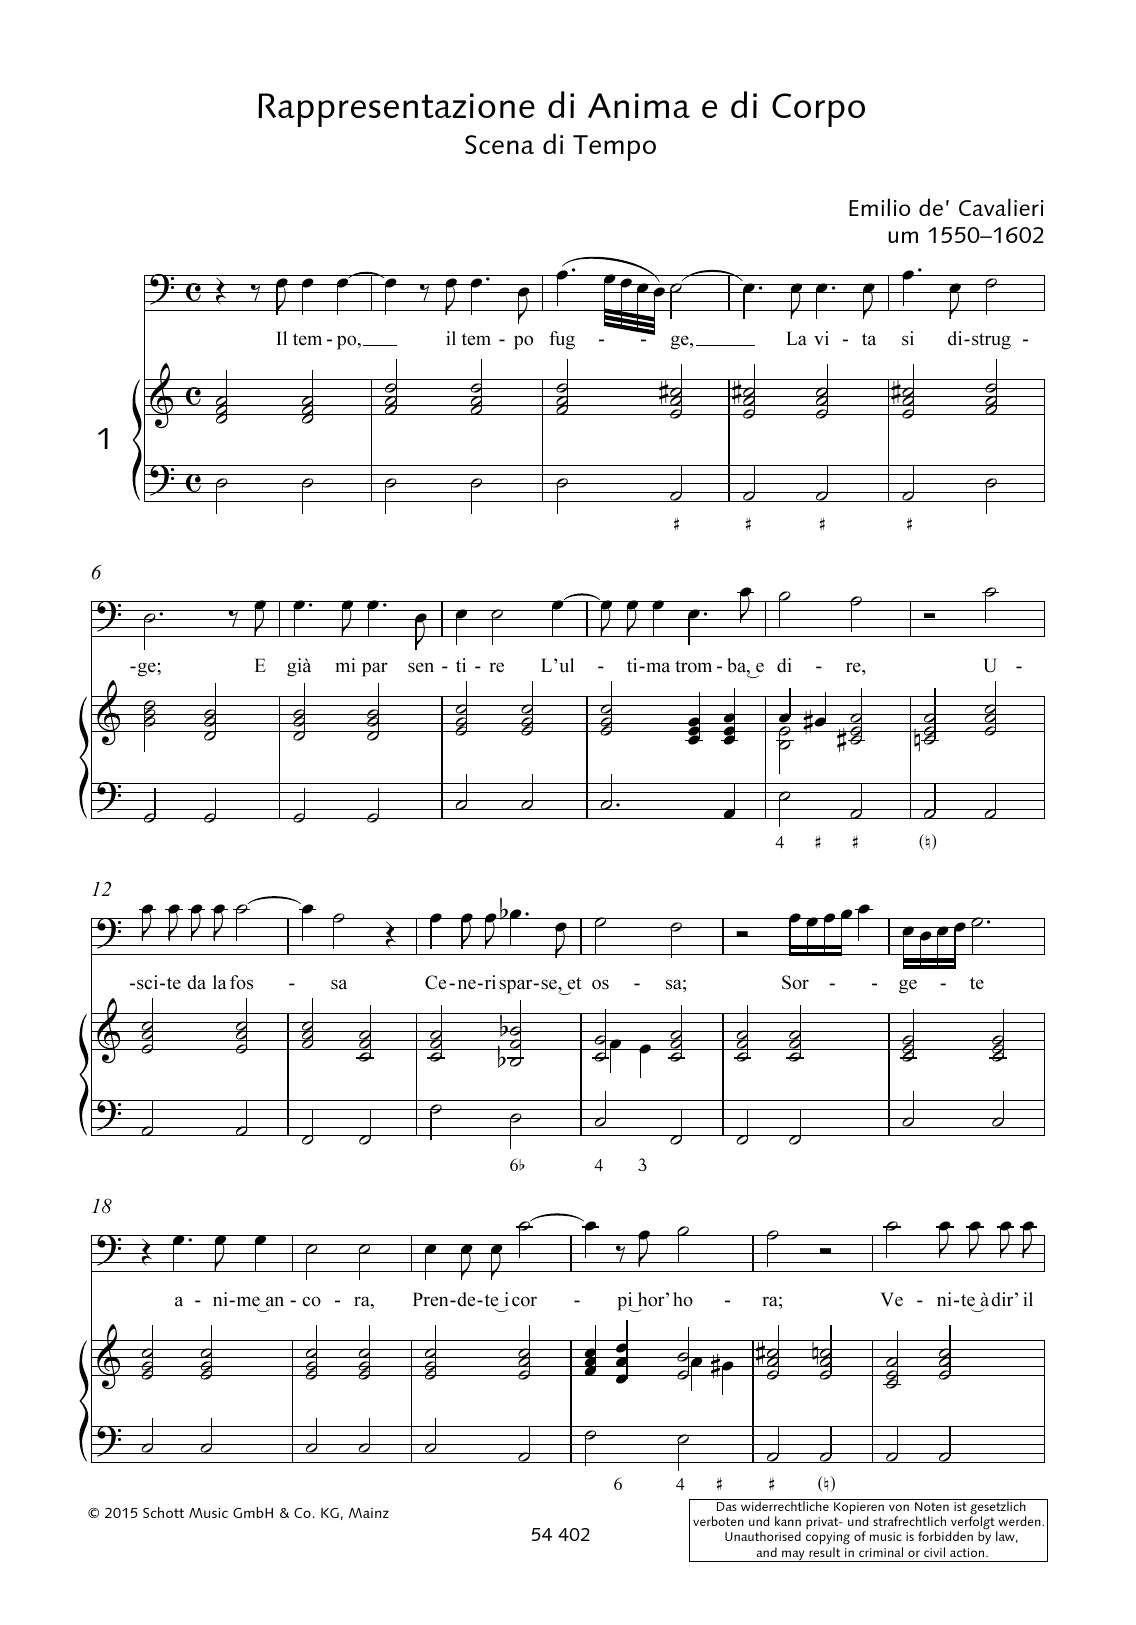 Emilio de Cavalieri Il tempo fugge, La vita si distrugge sheet music notes and chords arranged for Piano & Vocal